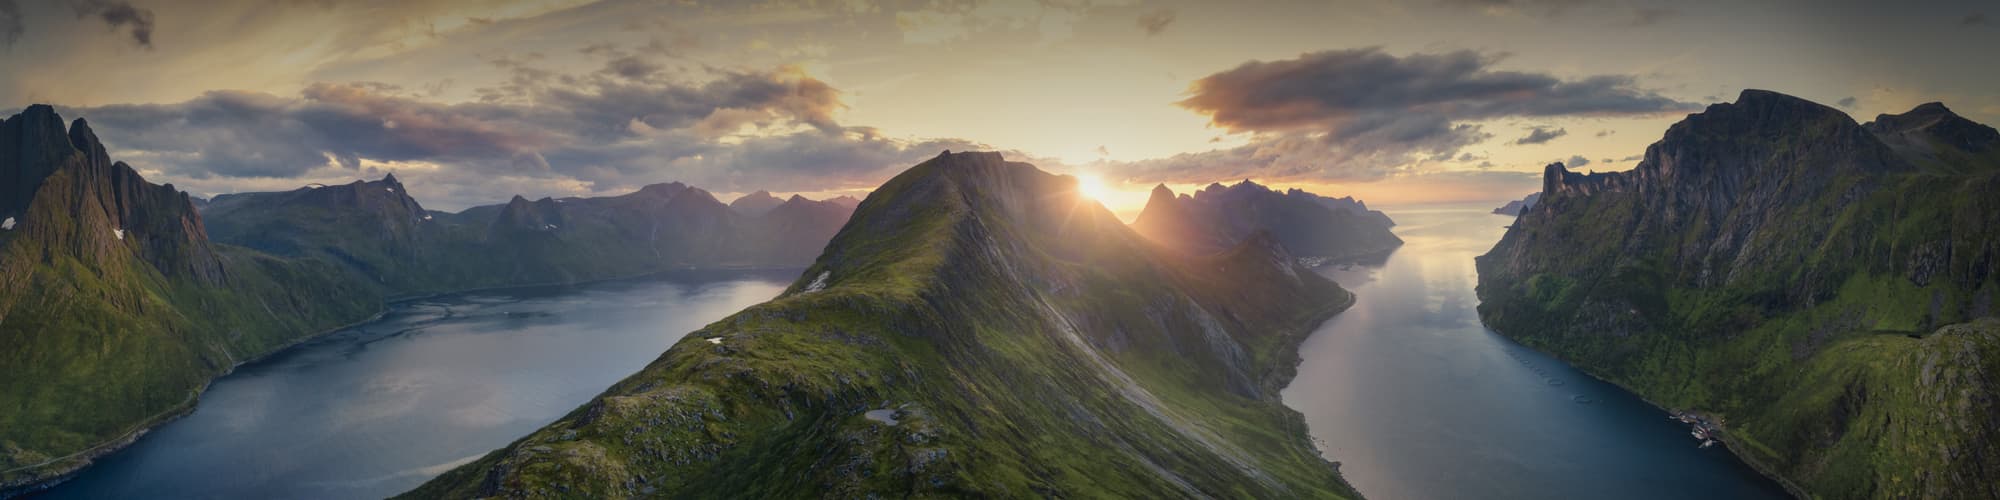 Croisière et voile Norvège © sivivolk